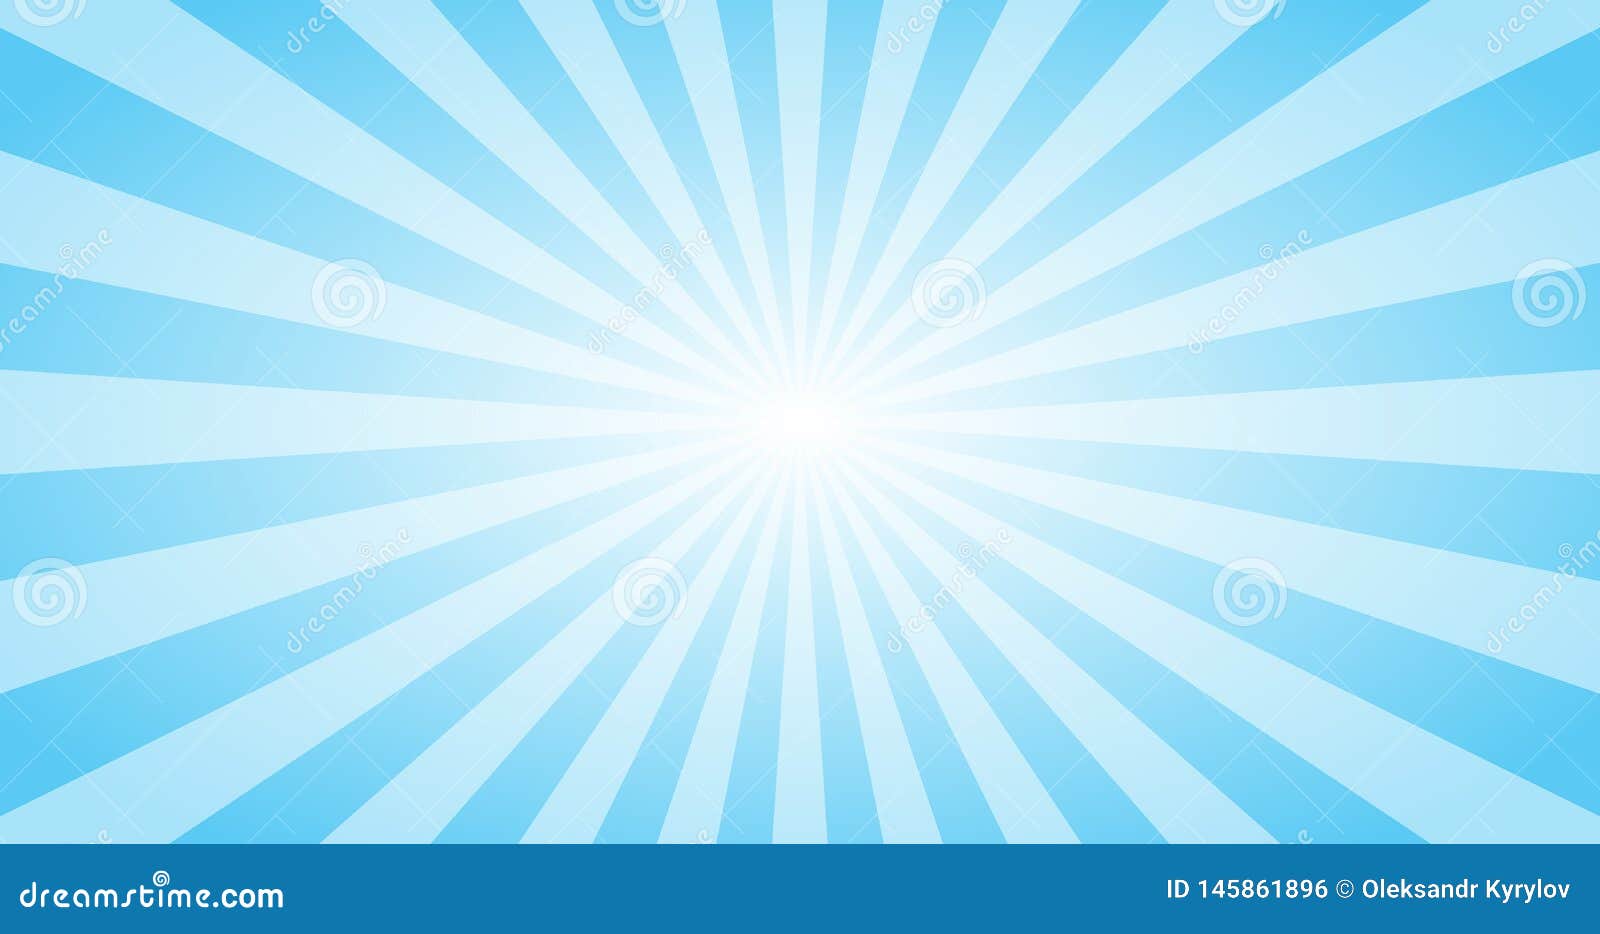 Với hình nền vector ánh sáng mặt trời xanh, bạn sẽ nhận được sự tươi sáng và đầy hy vọng. Phối hợp giữa màu xanh và ánh sáng mặt trời tạo ra một bức tranh tuyệt đẹp và rất ấn tượng. Hãy để màn hình của bạn chiếu sáng với những bức hình nền này.